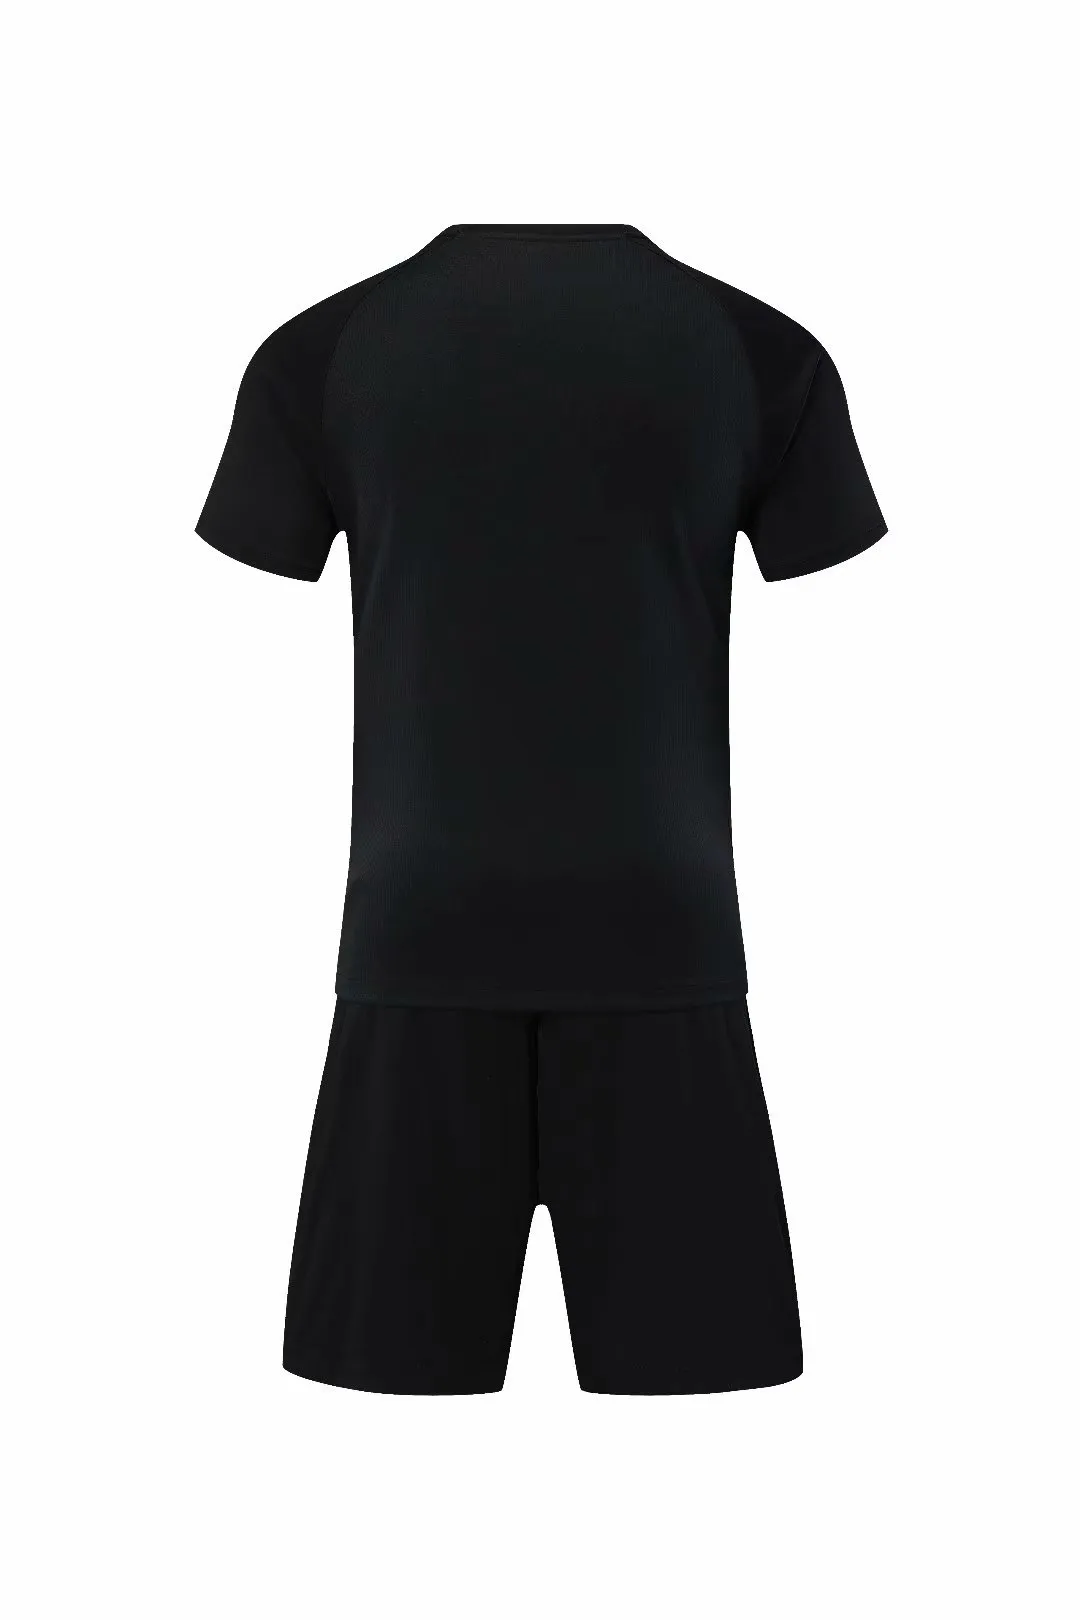 qianqiu00016Fußball-Trikots, schwarzes T-Shirt für Erwachsene, individueller Service, atmungsaktiv, individuelle personalisierte Dienste, Schulmannschaft, alle Vereins-Fußball-Shirts